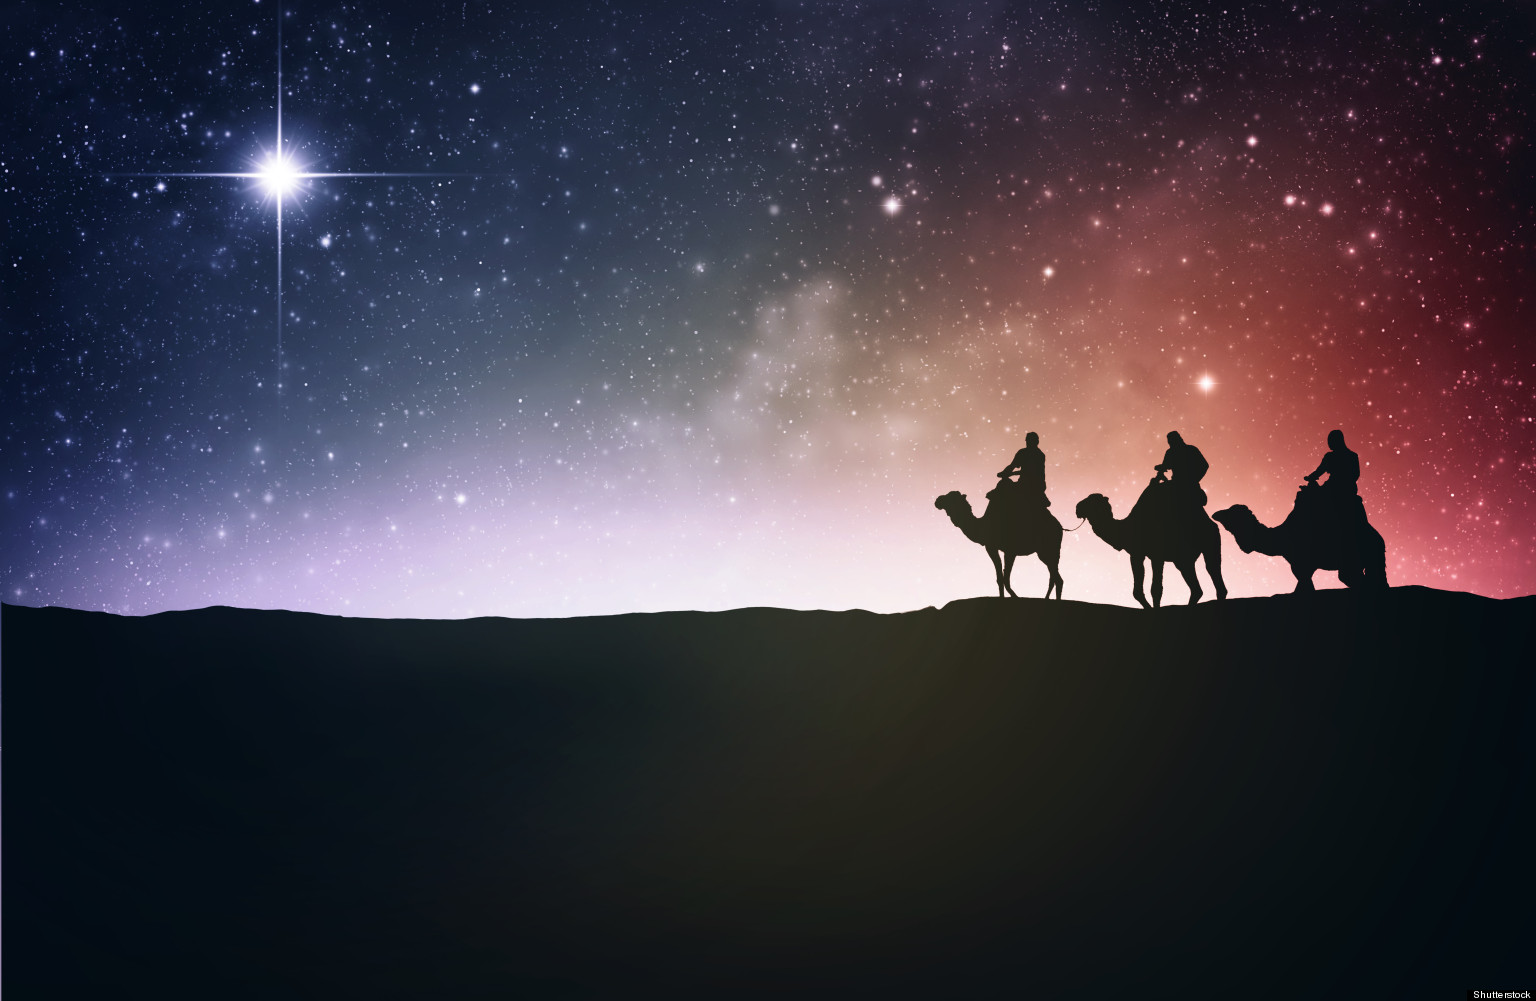 Día de Reyes Magos, origen, adoración, rosca y felicidad para todos |  Periódico Mirador